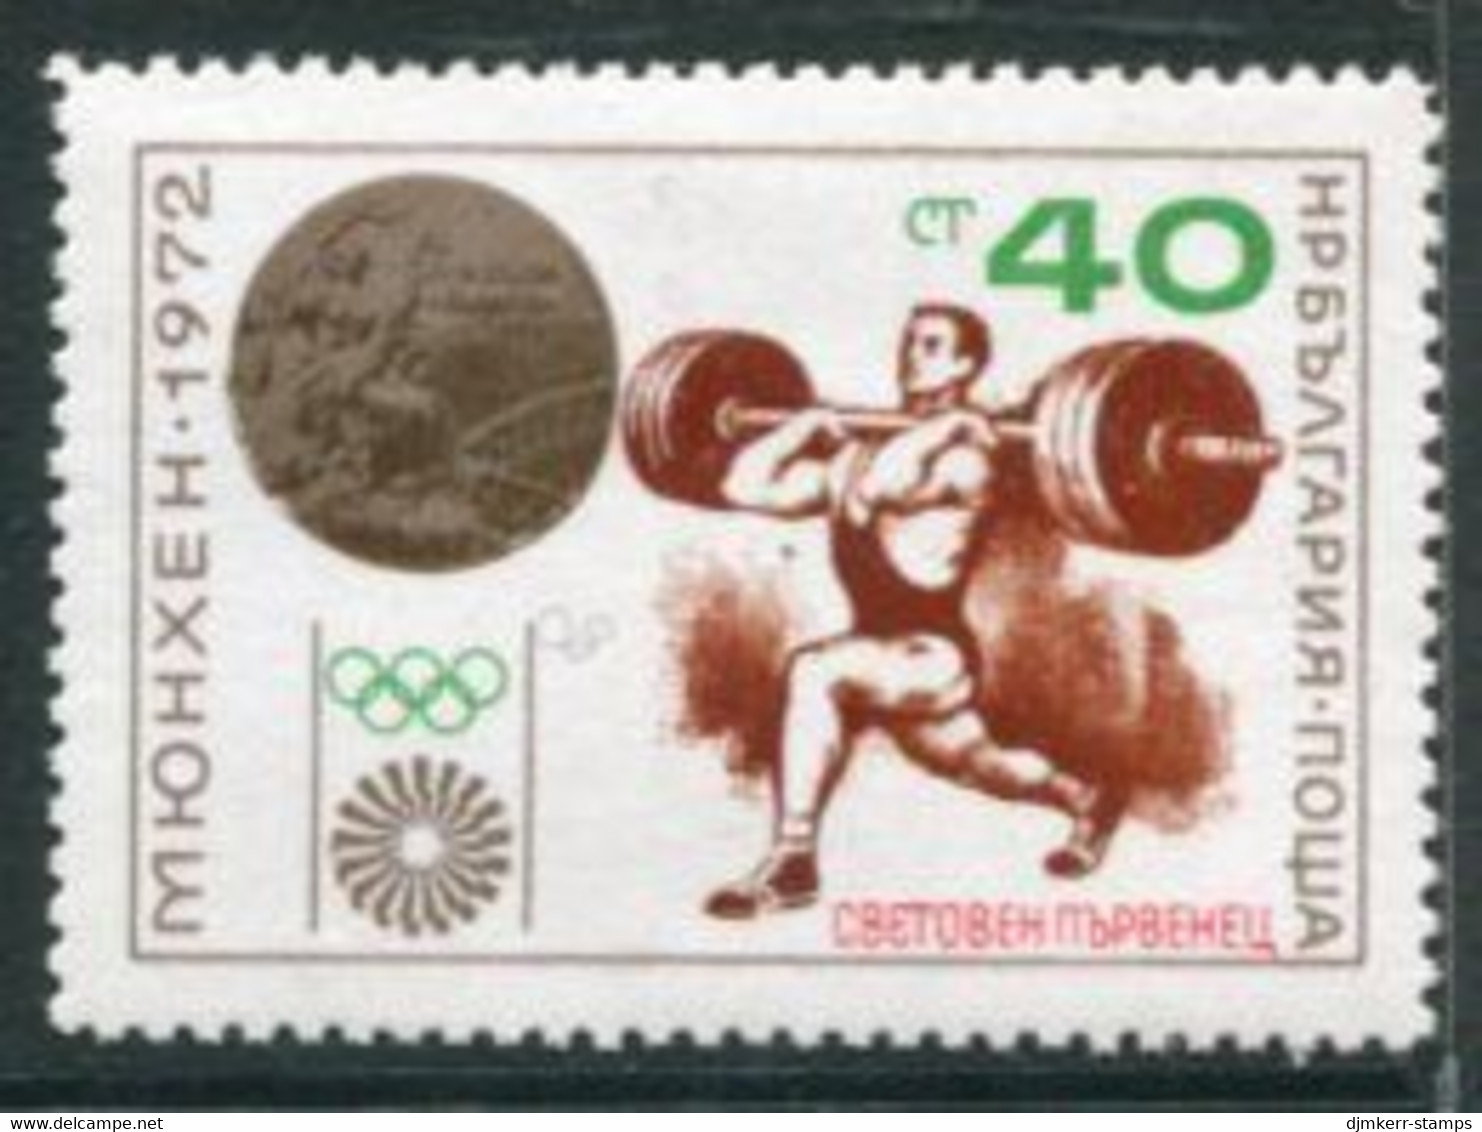 BULGARIA 1972 Weightlifting World Champion  MNH / **.  Michel  2201 - Ungebraucht